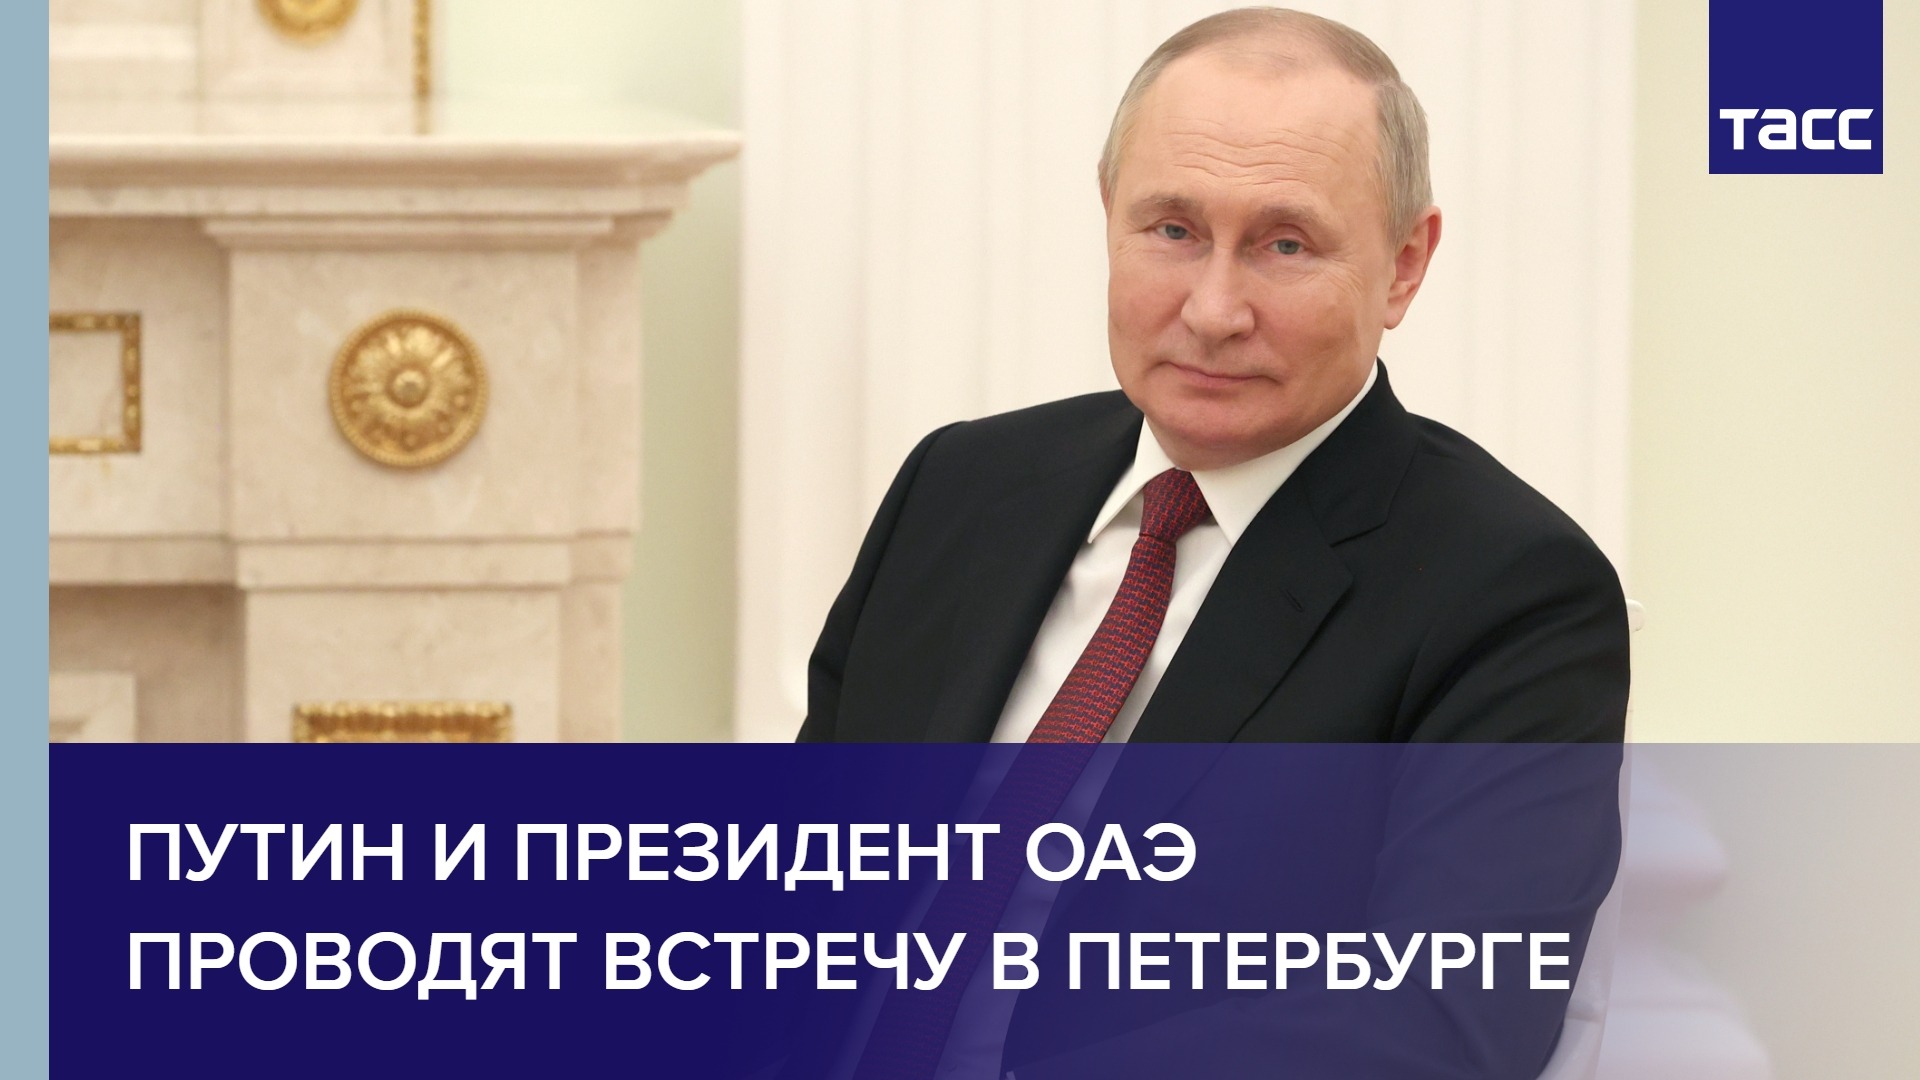 Путин и президент ОАЭ проводят встречу в Петербурге